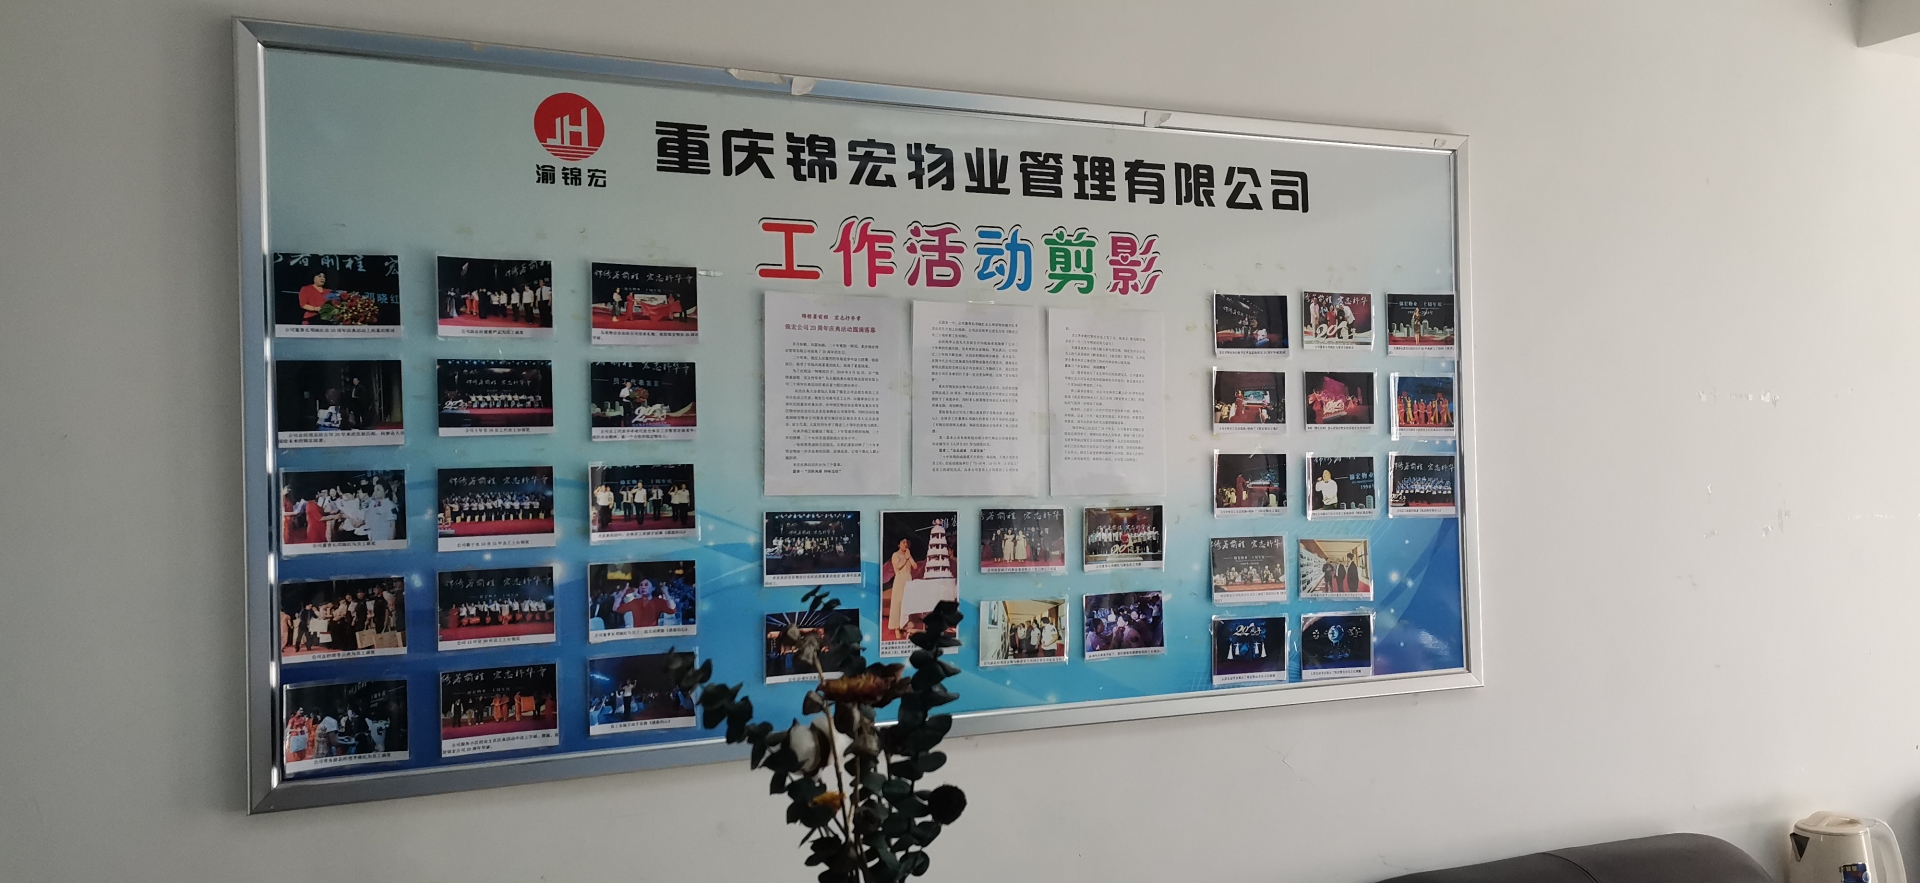 重庆锦宏物业管理有限公司 环境照片活动图片